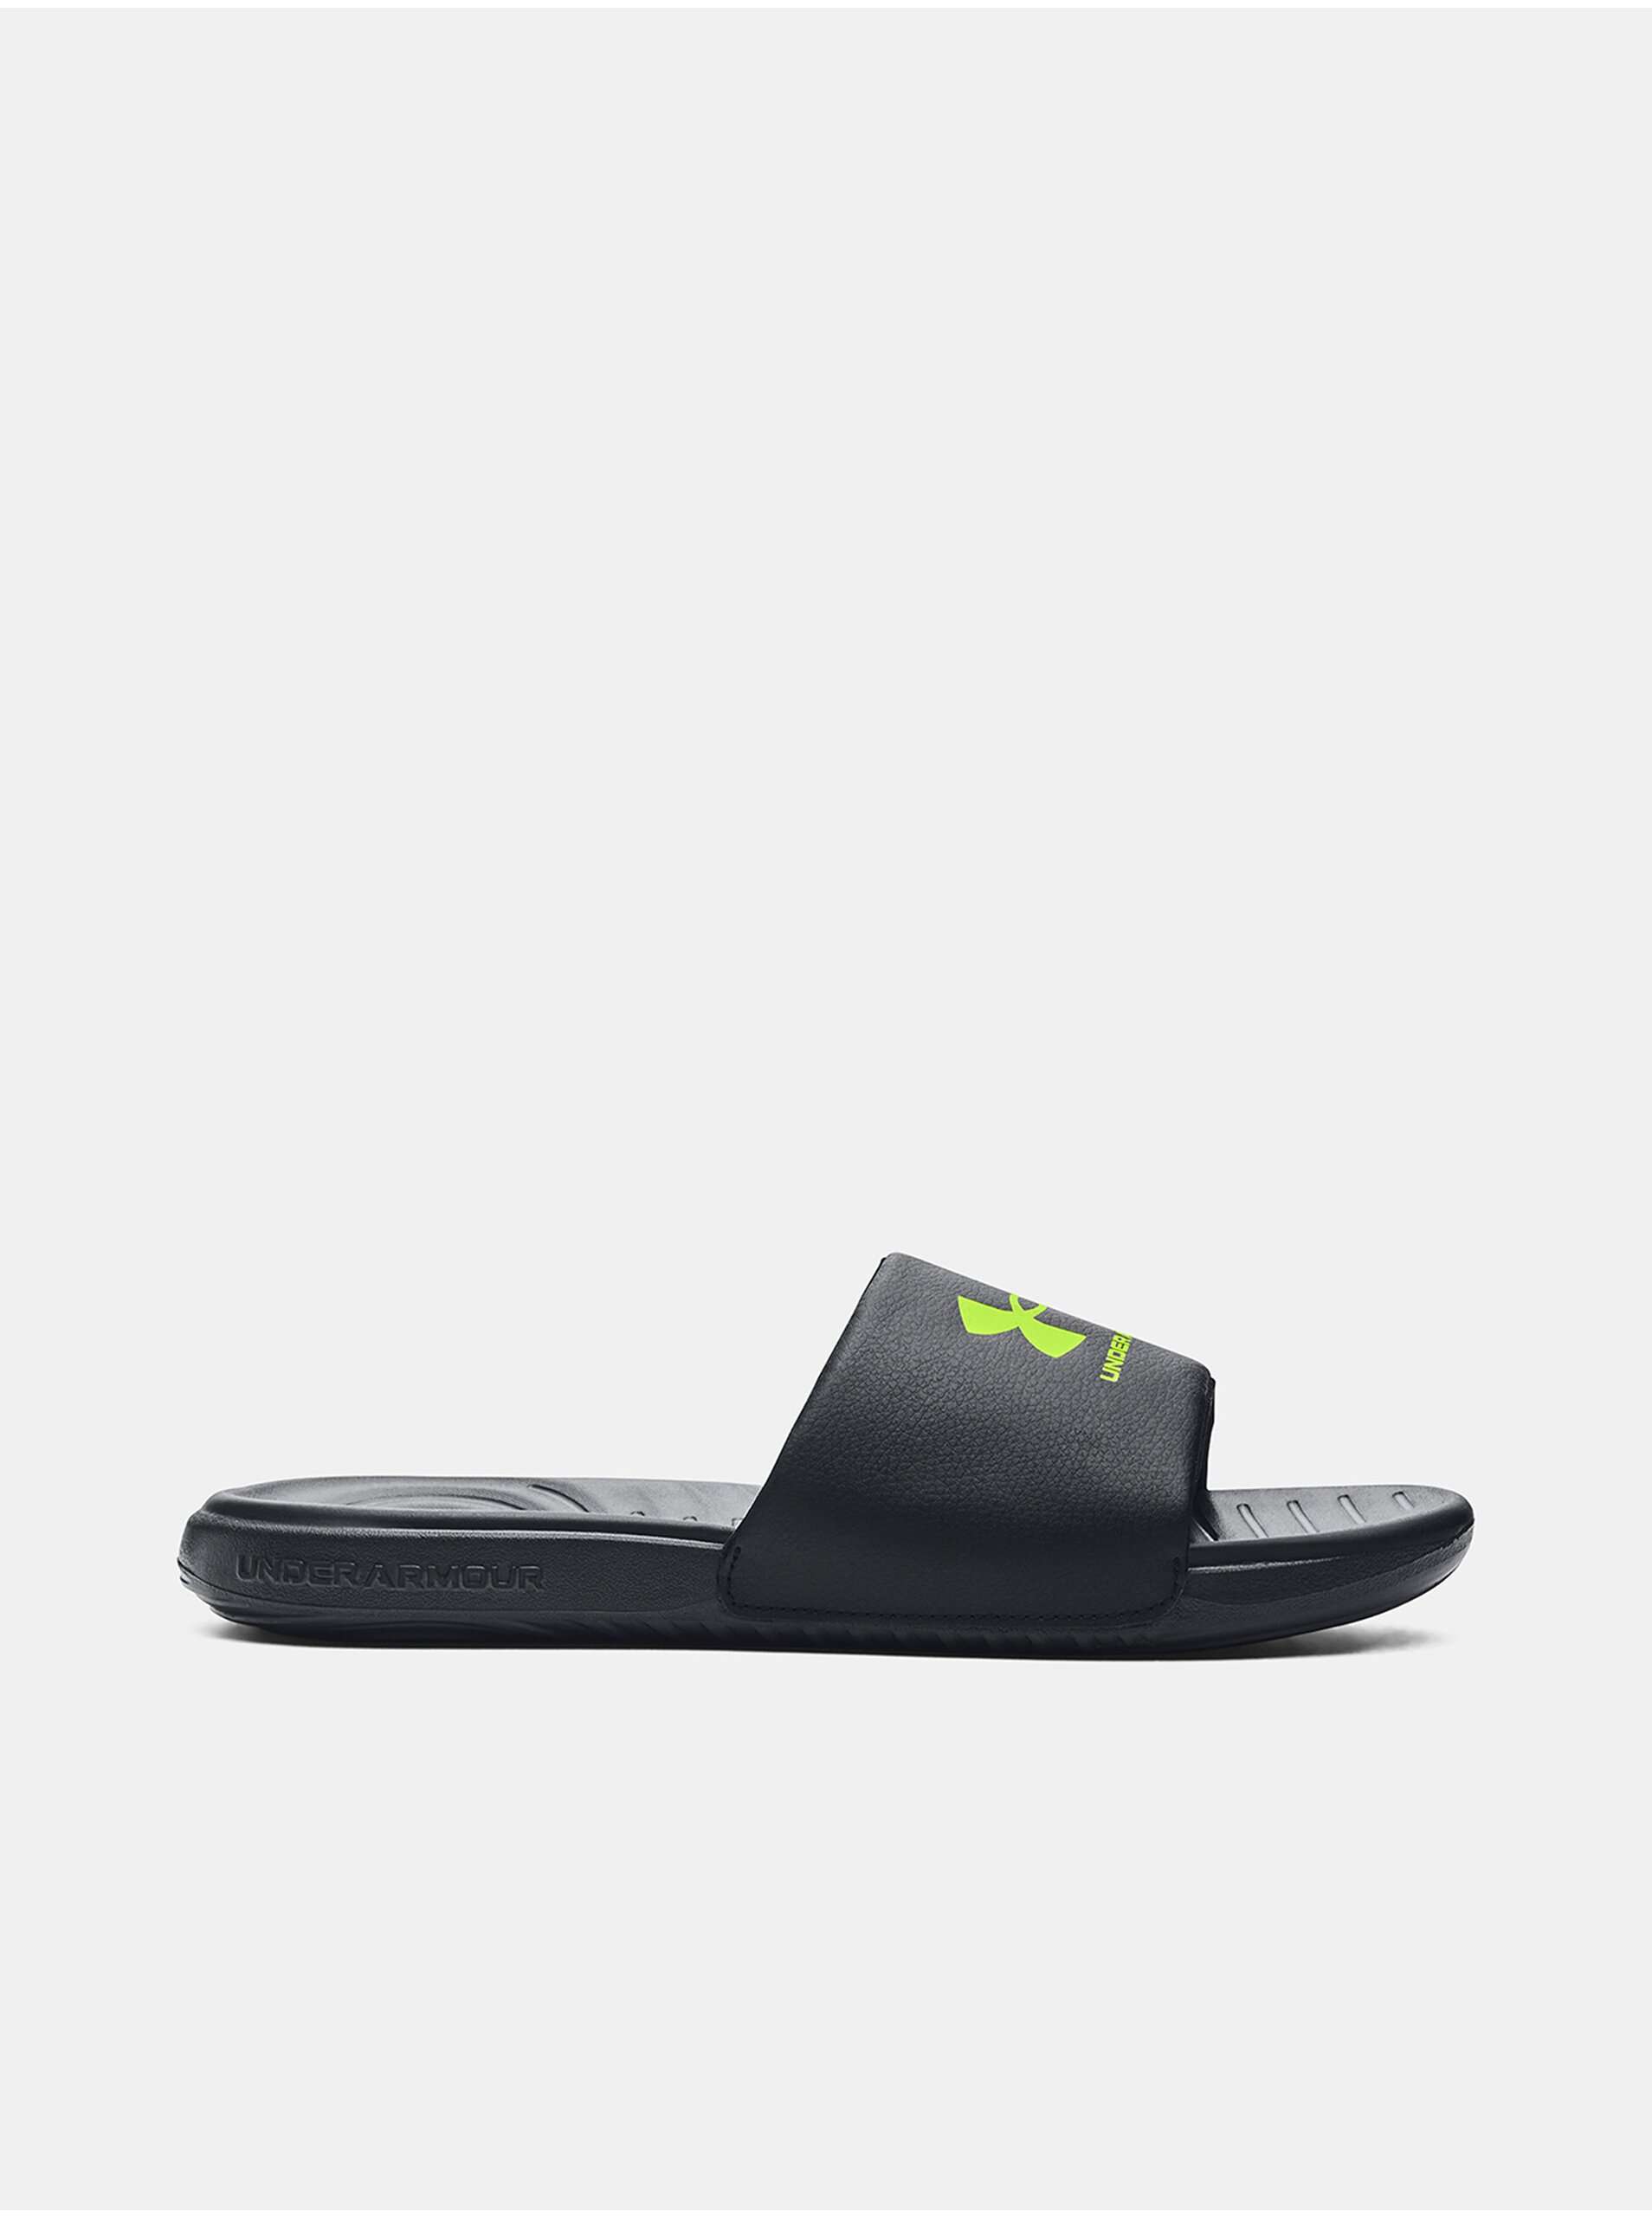 E-shop Sandále, papuče pre mužov Under Armour - čierna